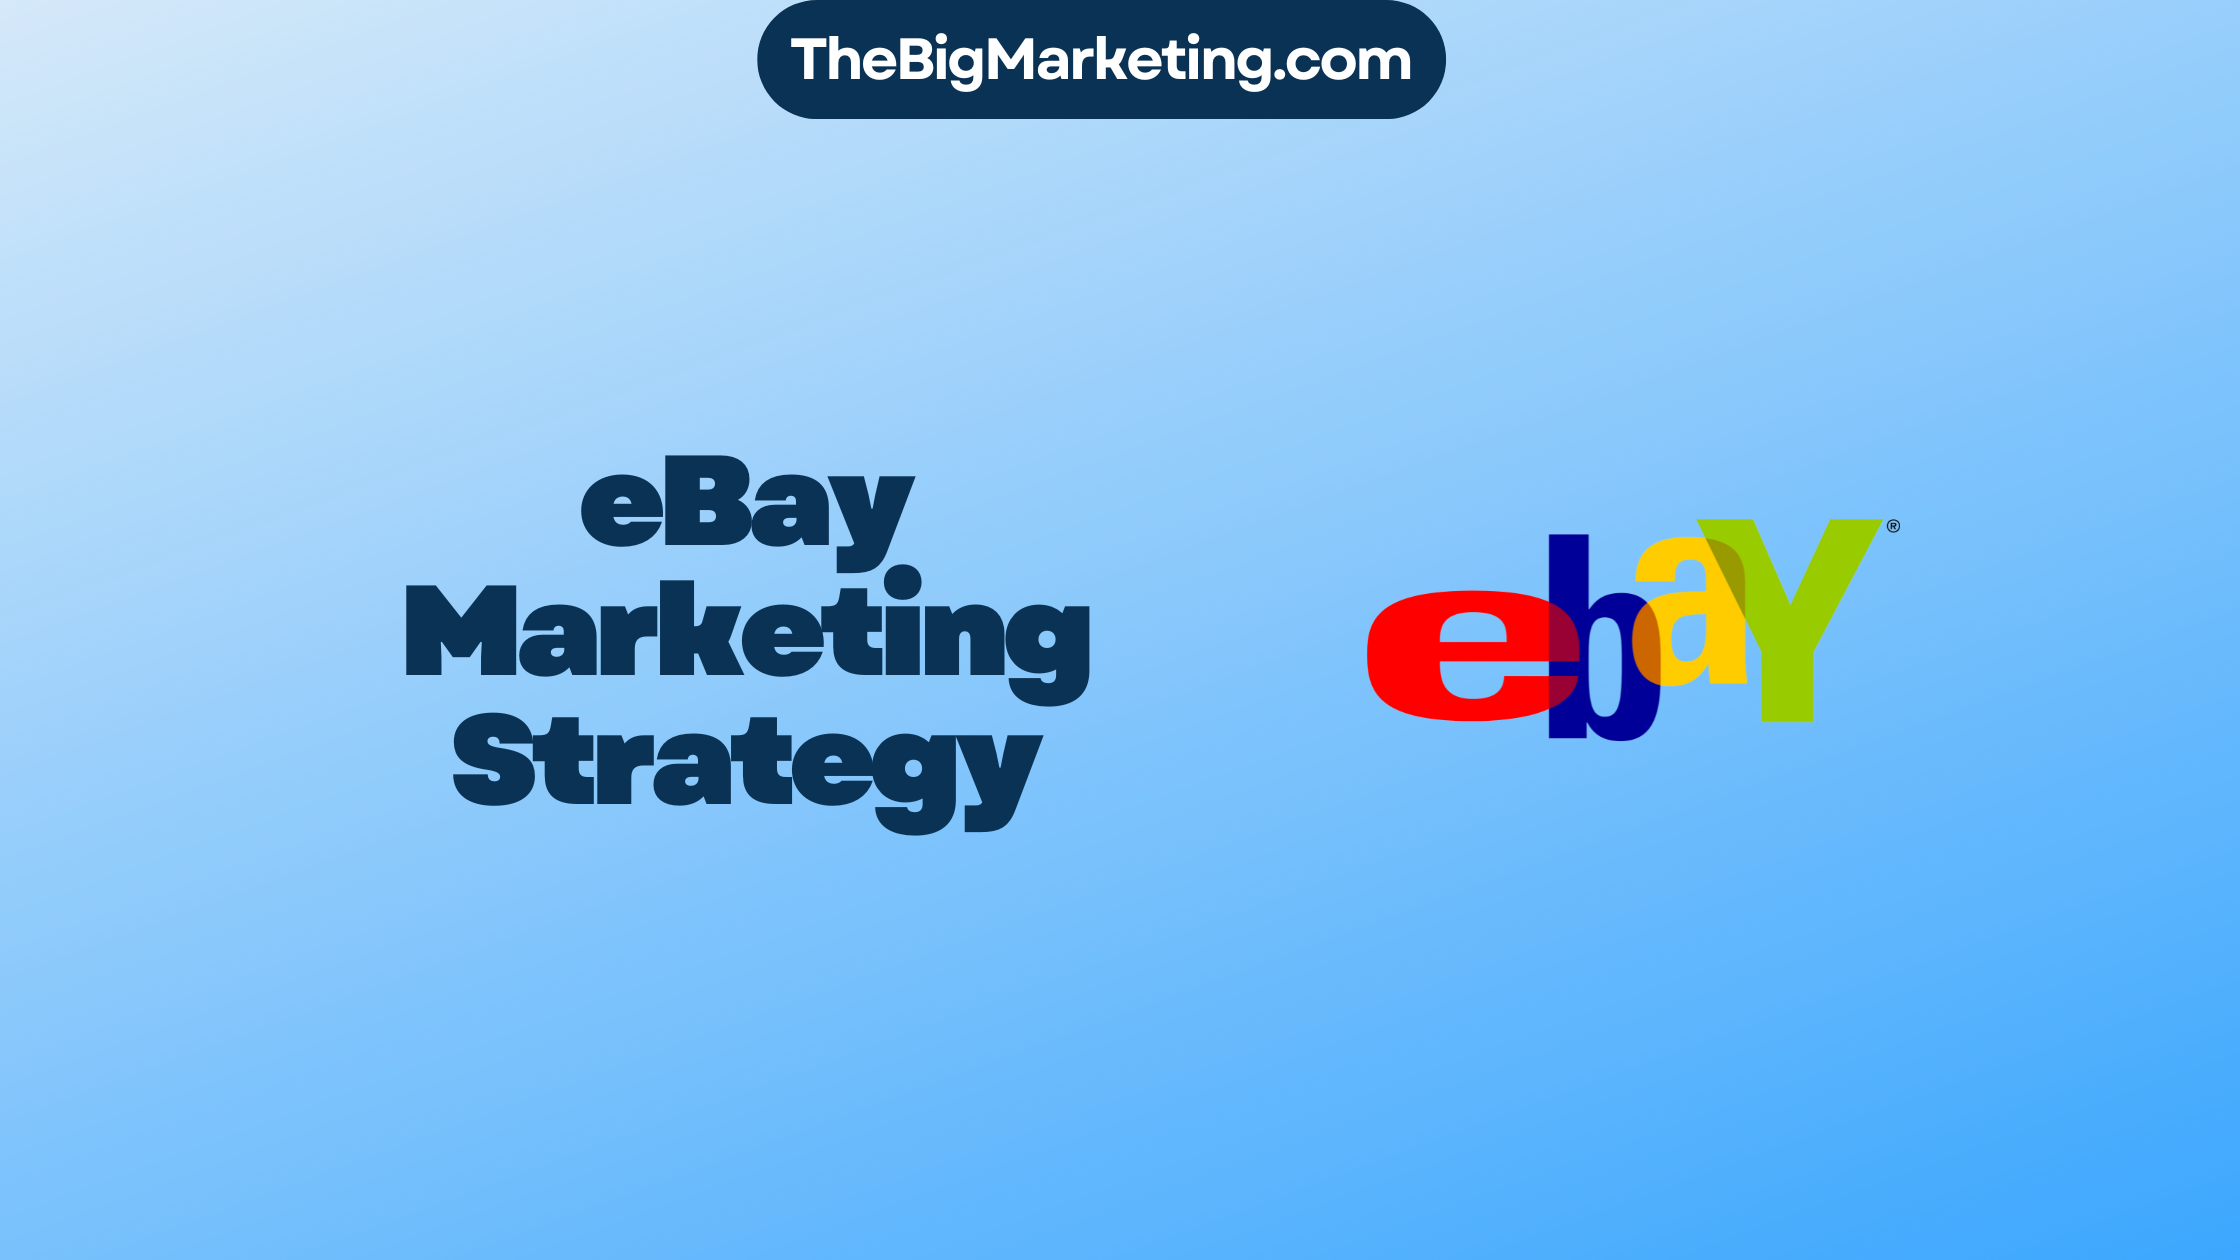 eBay Marketing Strategy